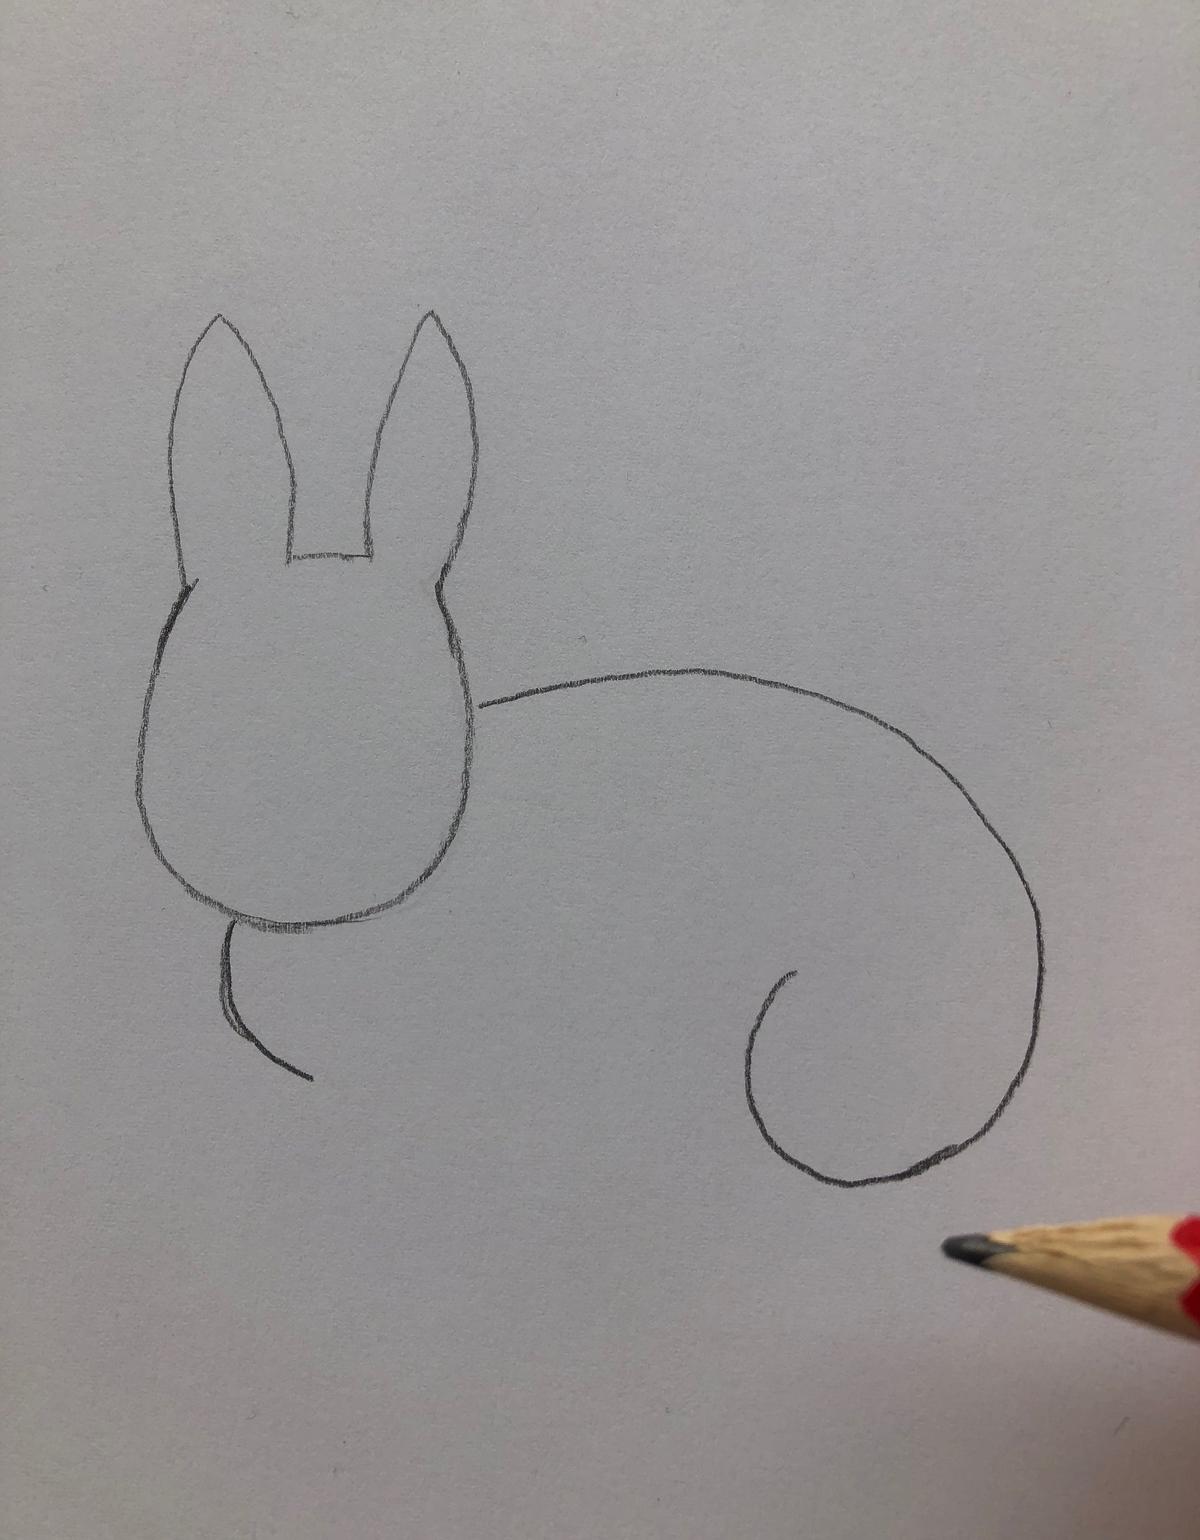 Как нарисовать кролика — пошаговая инструкция [ФОТО]